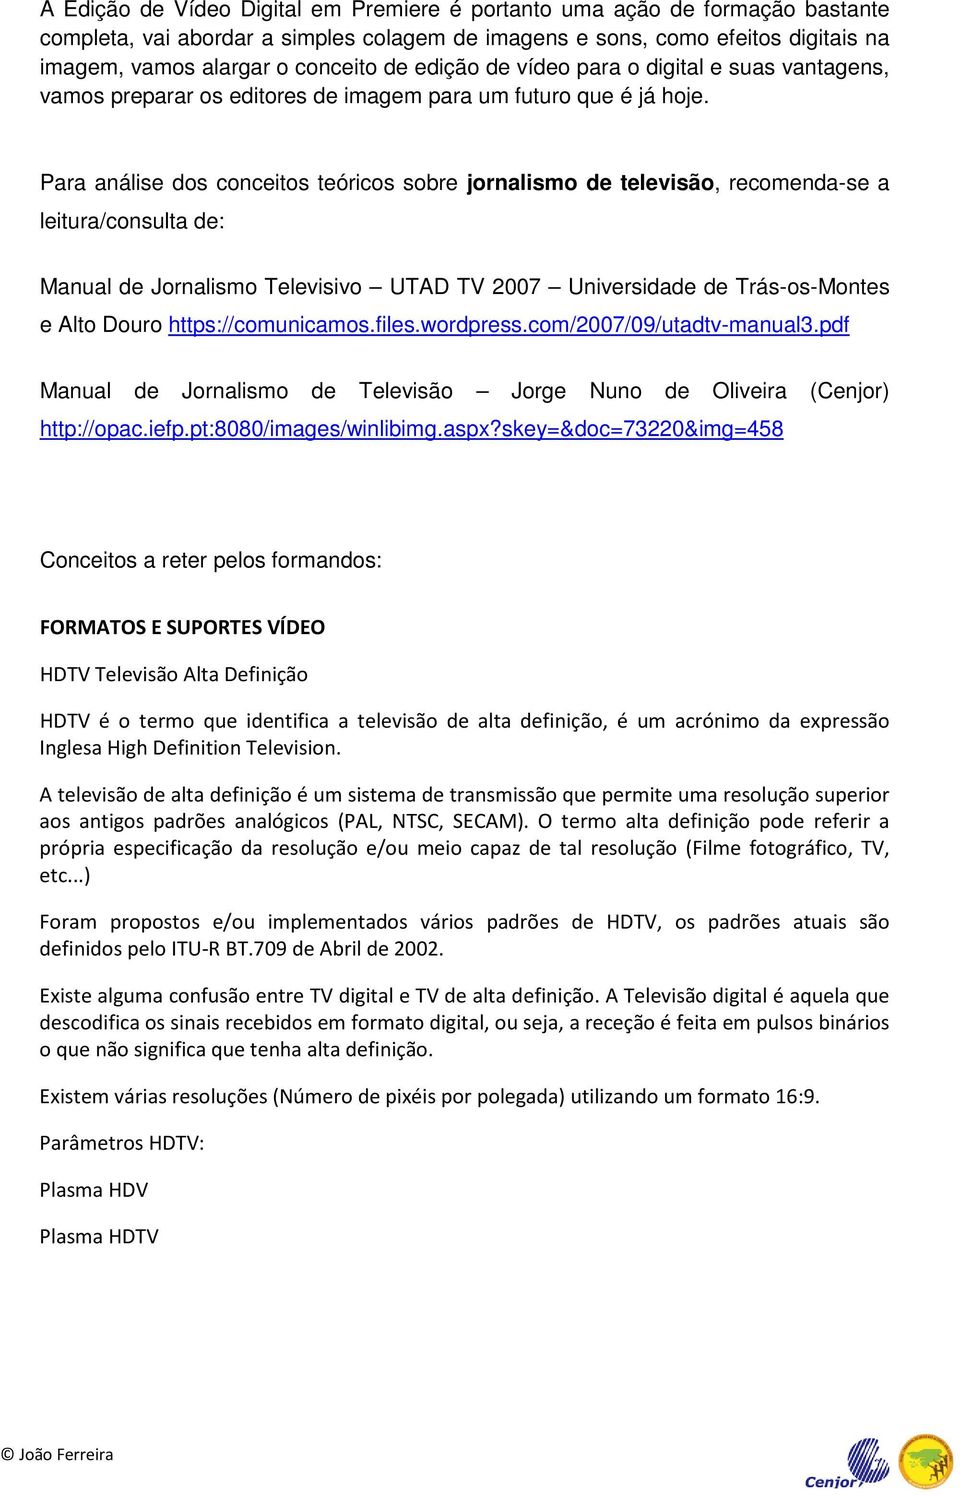 Para análise dos conceitos teóricos sobre jornalismo de televisão, recomenda-se a leitura/consulta de: Manual de Jornalismo Televisivo UTAD TV 2007 Universidade de Trás-os-Montes e Alto Douro